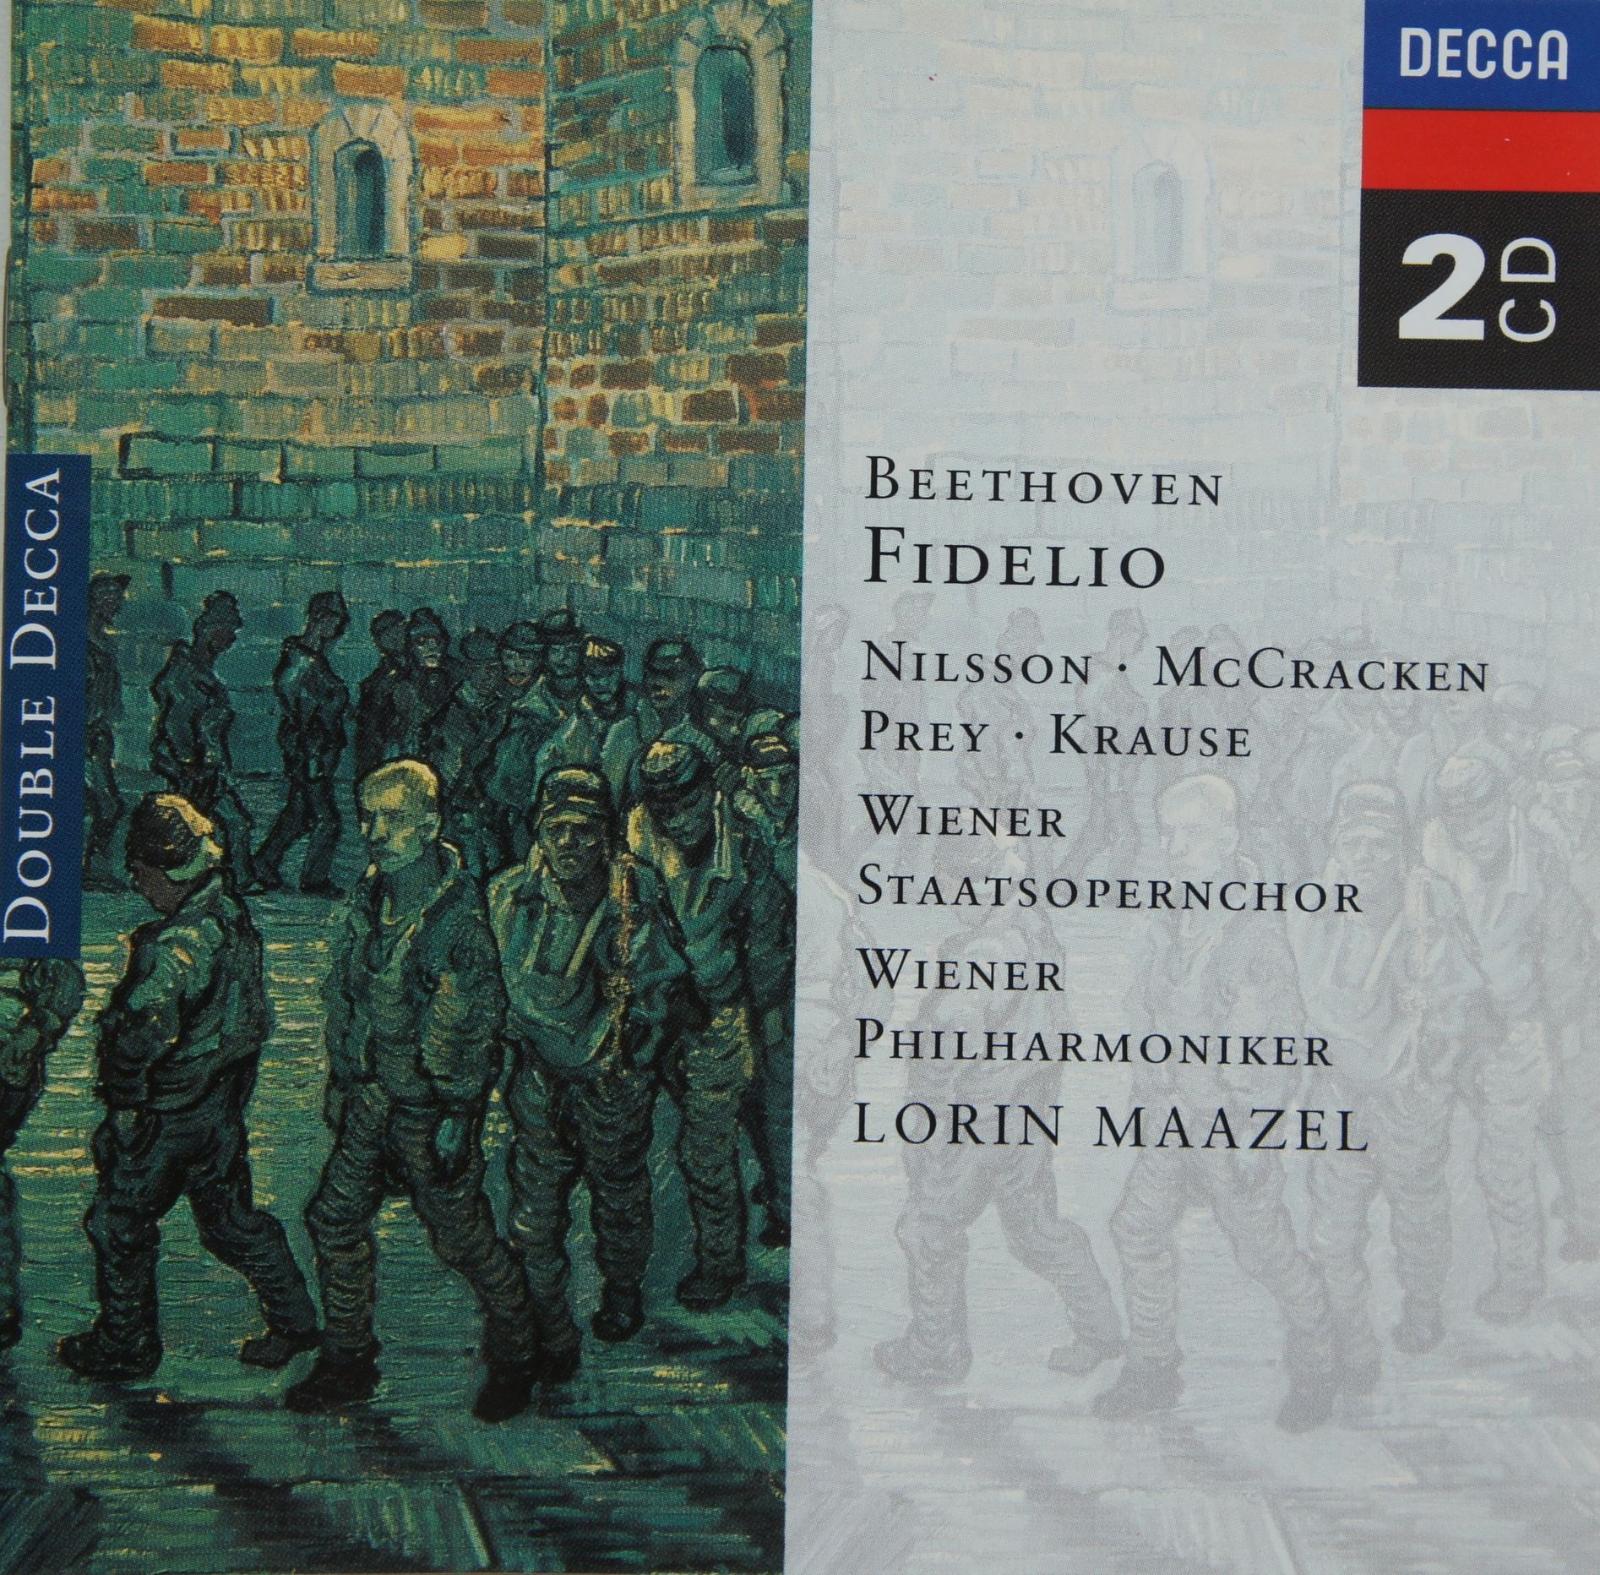 2 CD BEETHOVEN Fidelio - Hudba